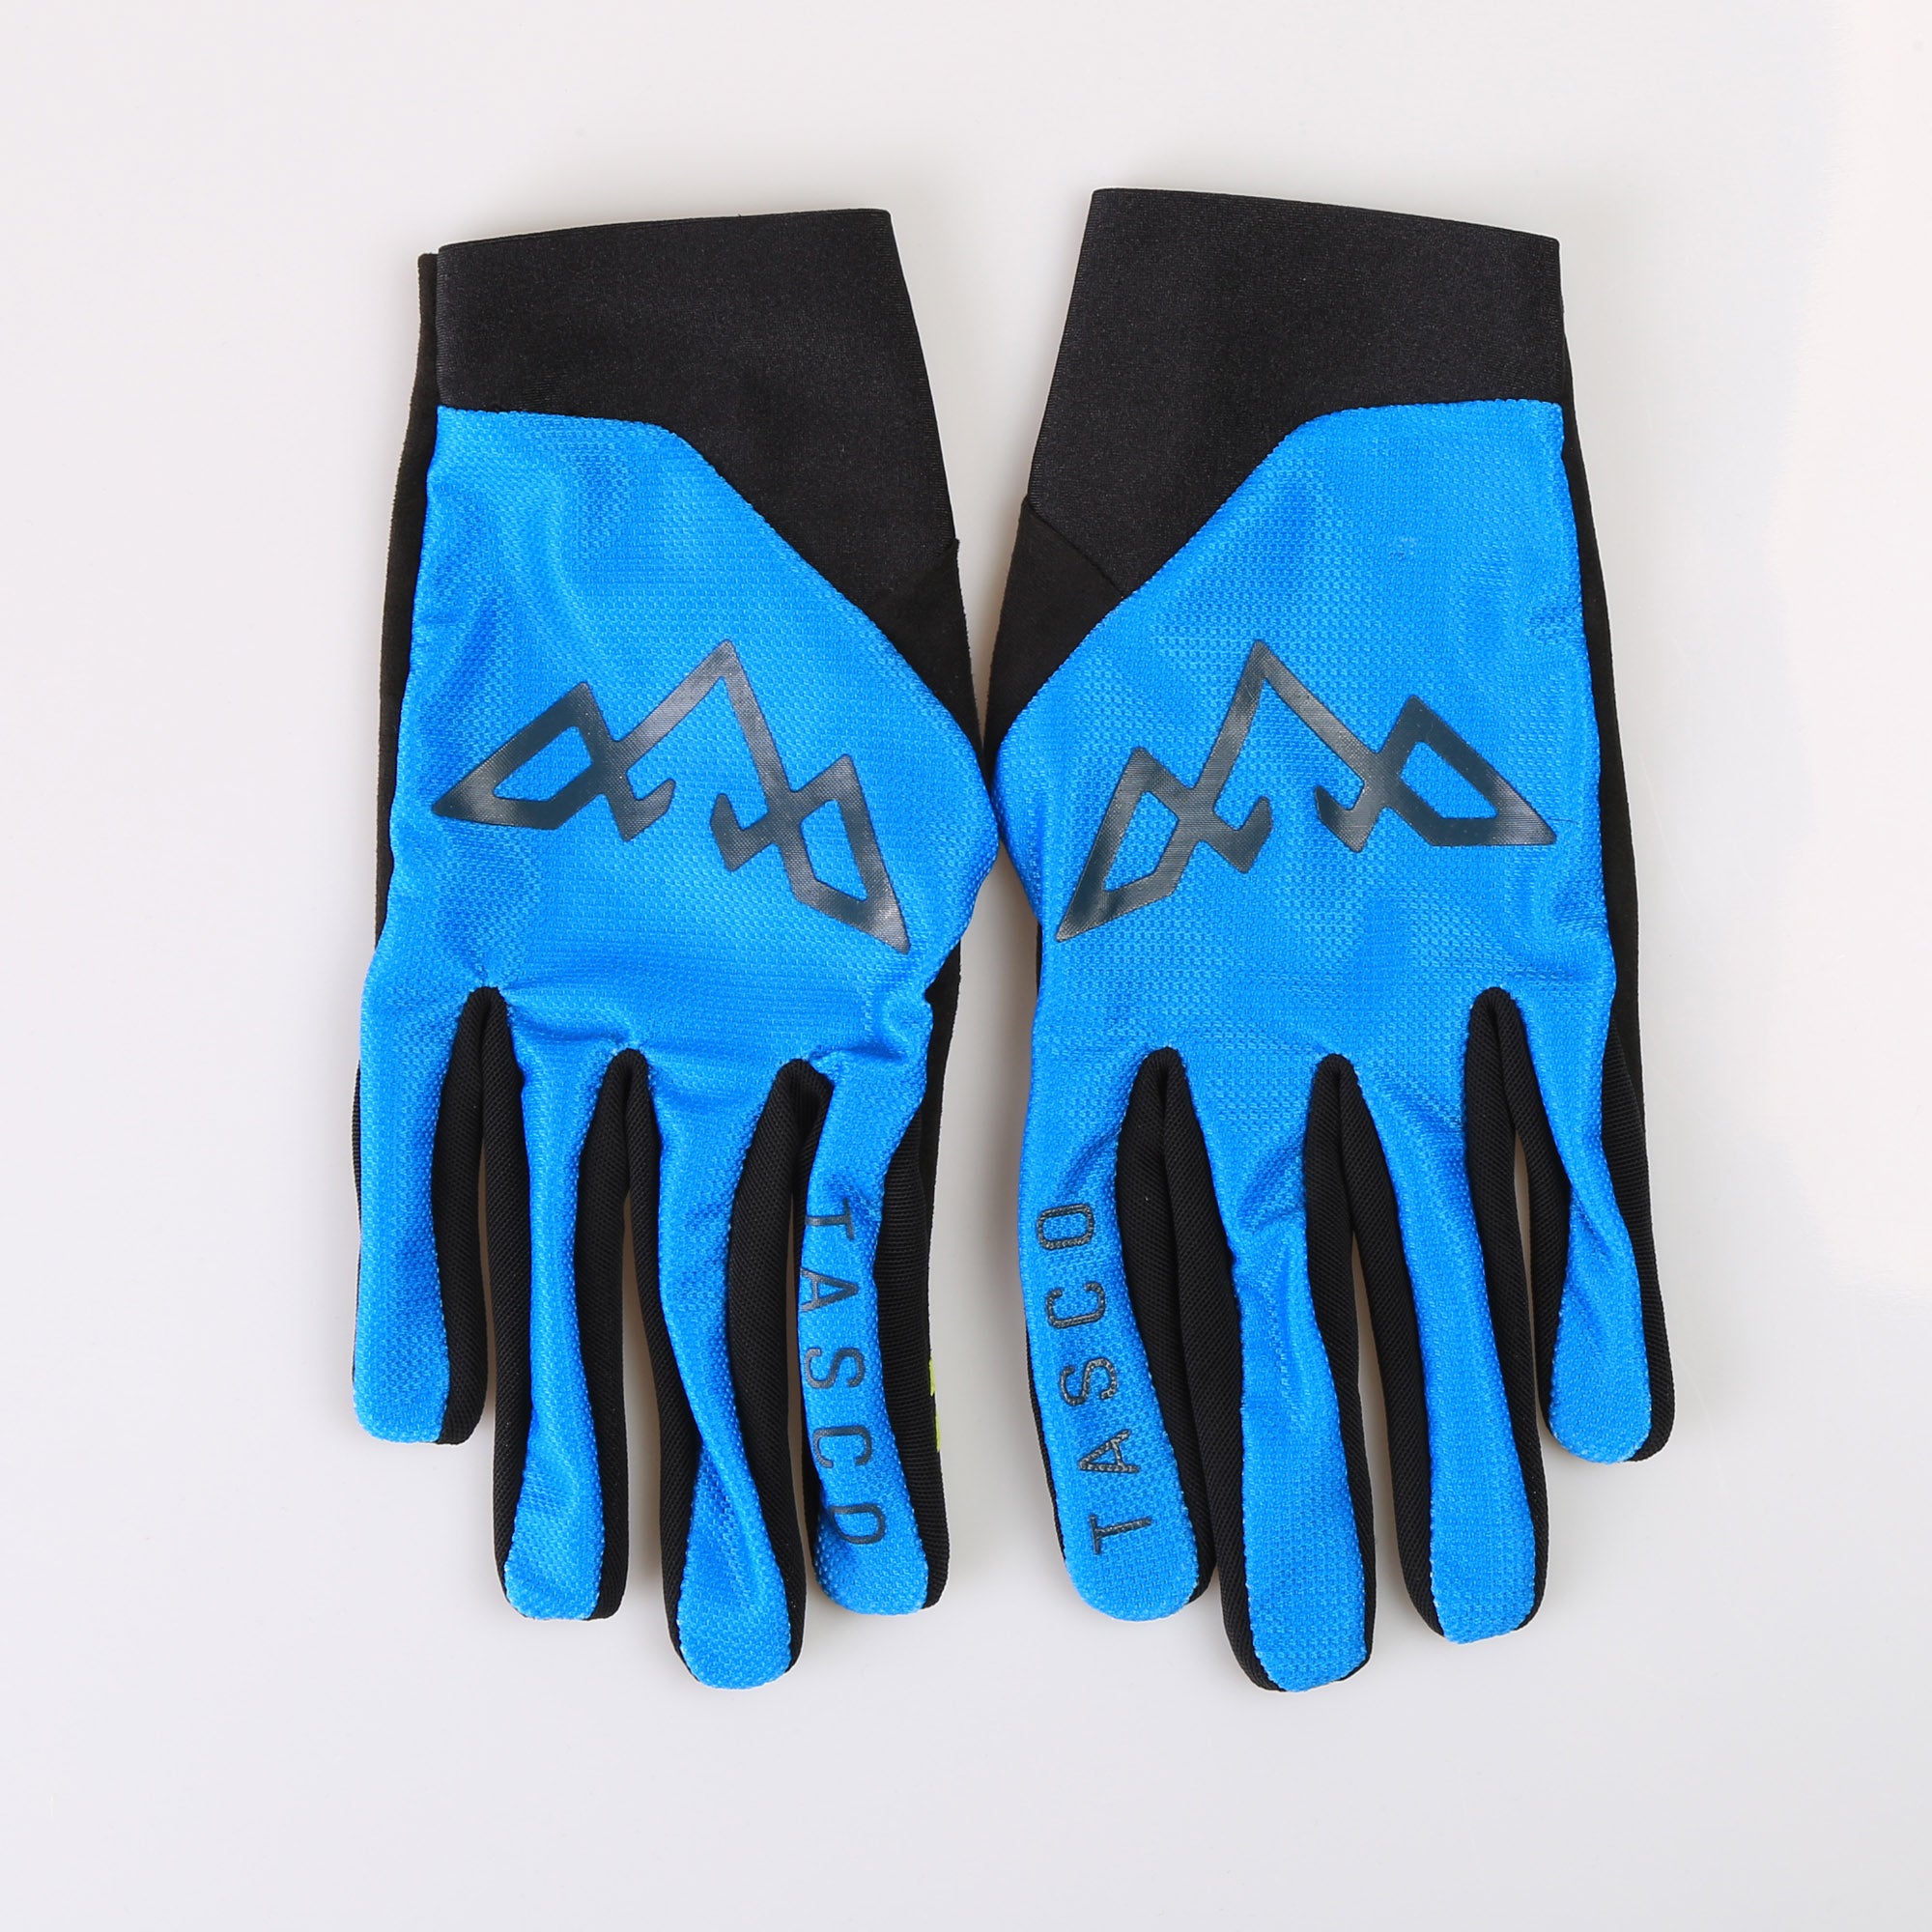 Fantom Ultralite Gloves - Kryptonite